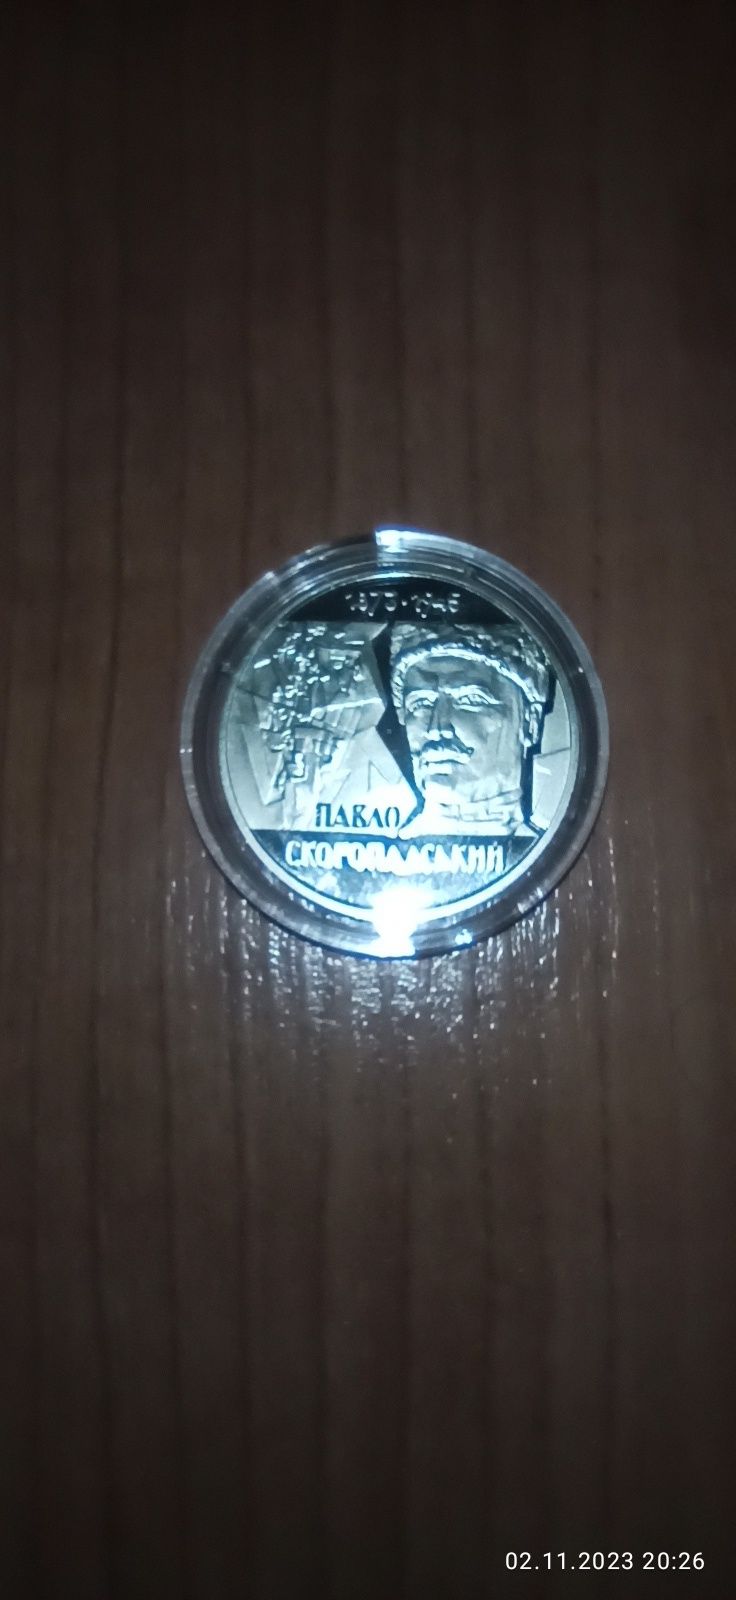 Павло Скоропадський, 2 грн., 2023 рік. Пам'ятна монета НБУ.